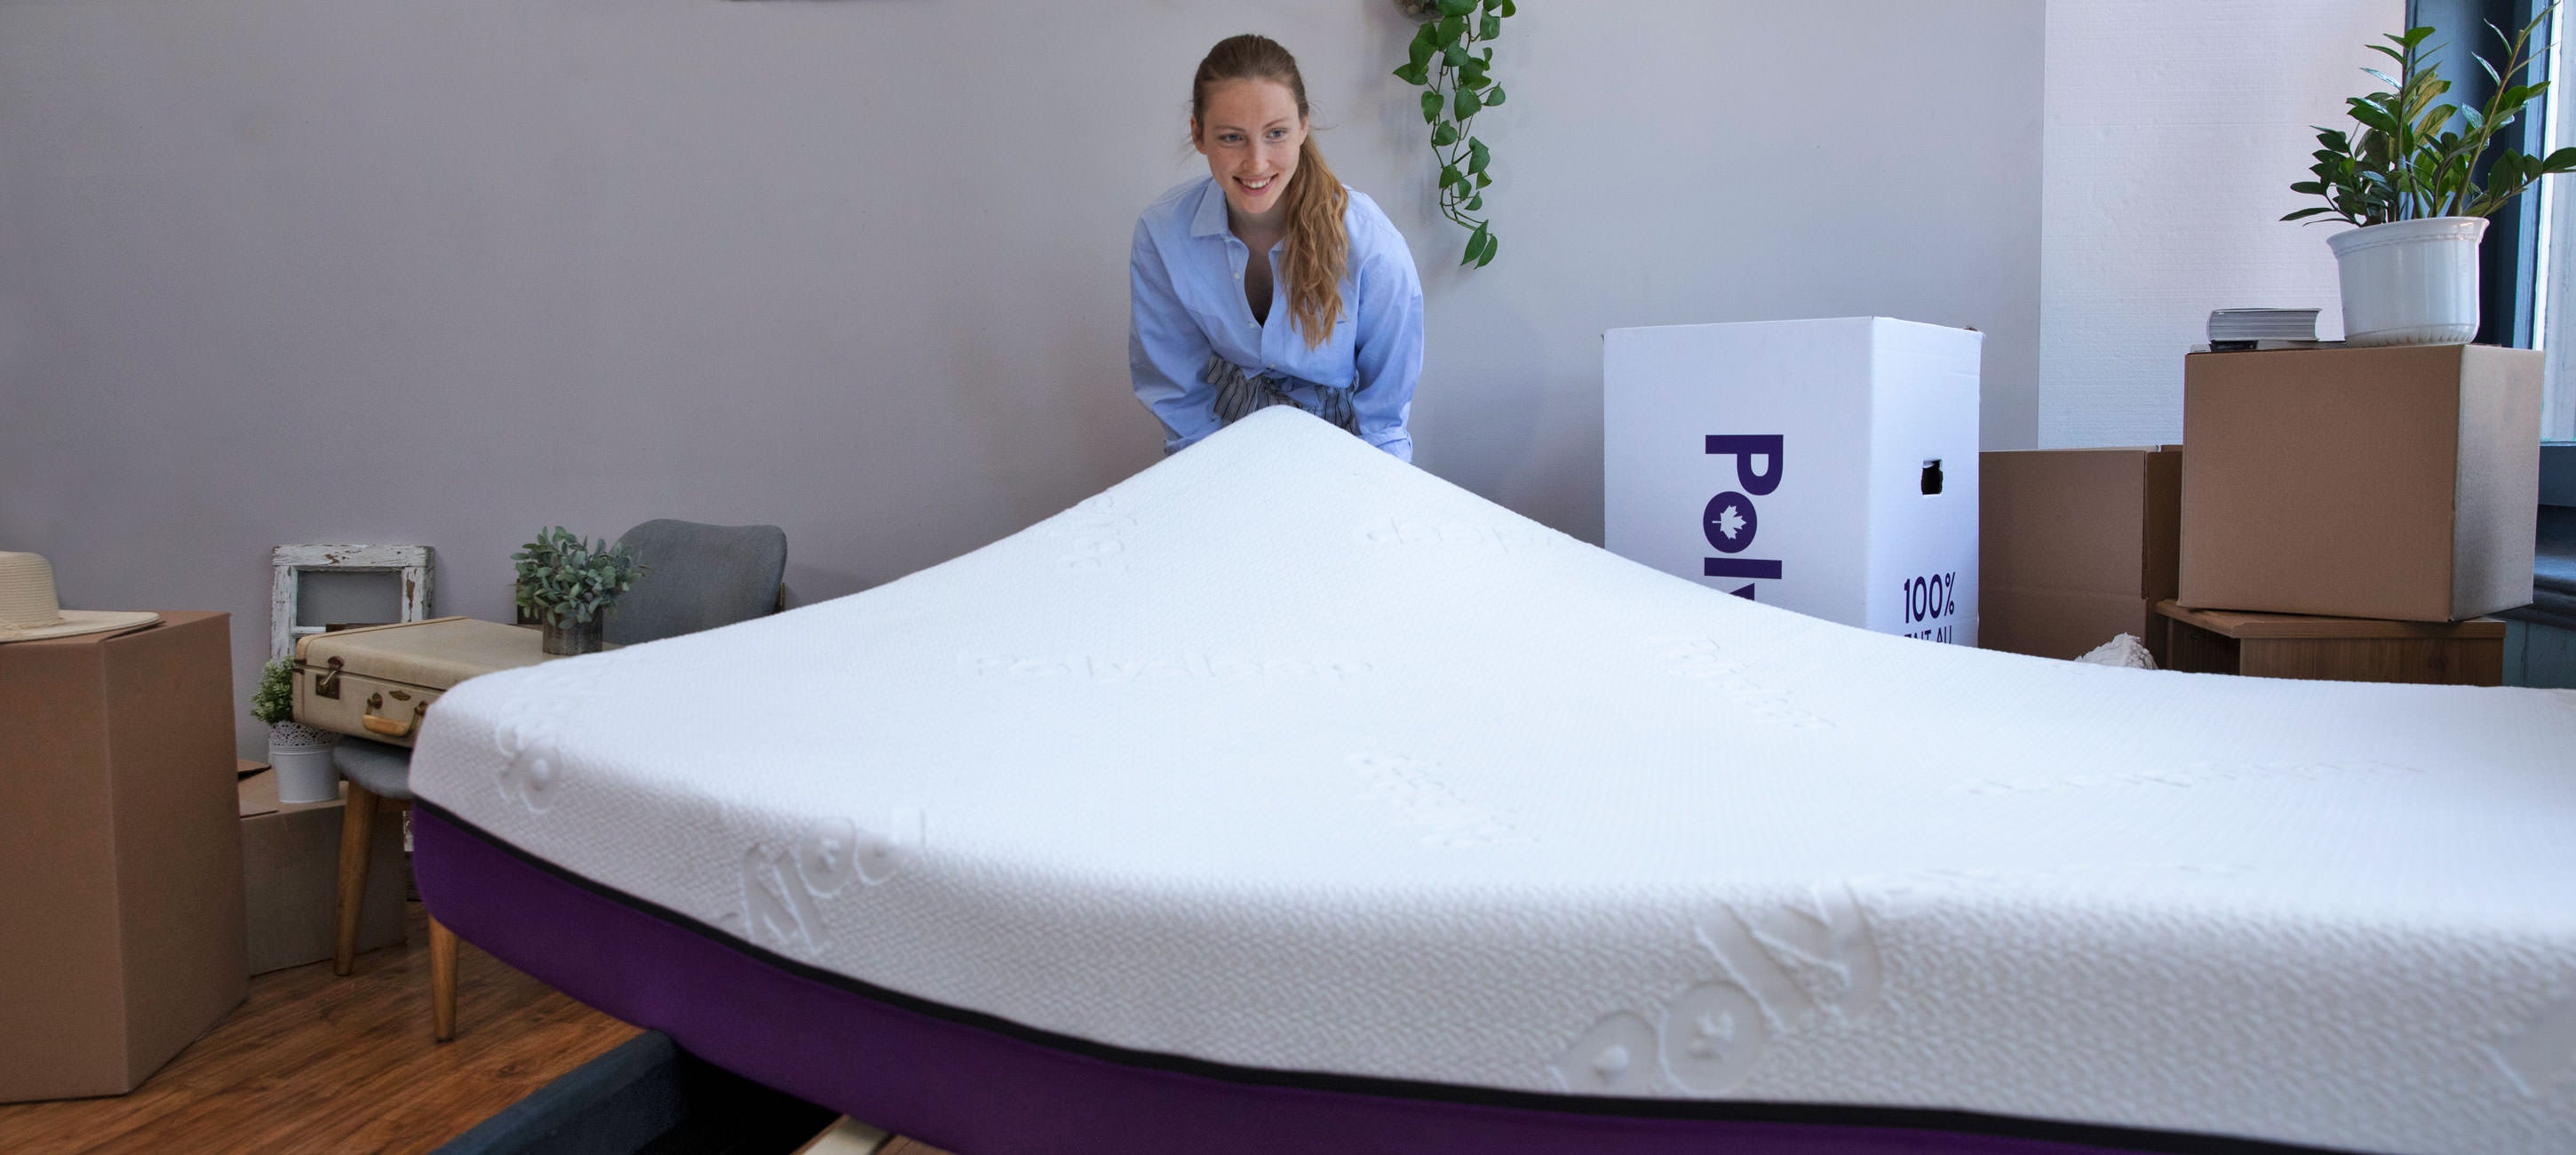 Polysleep mattress installation